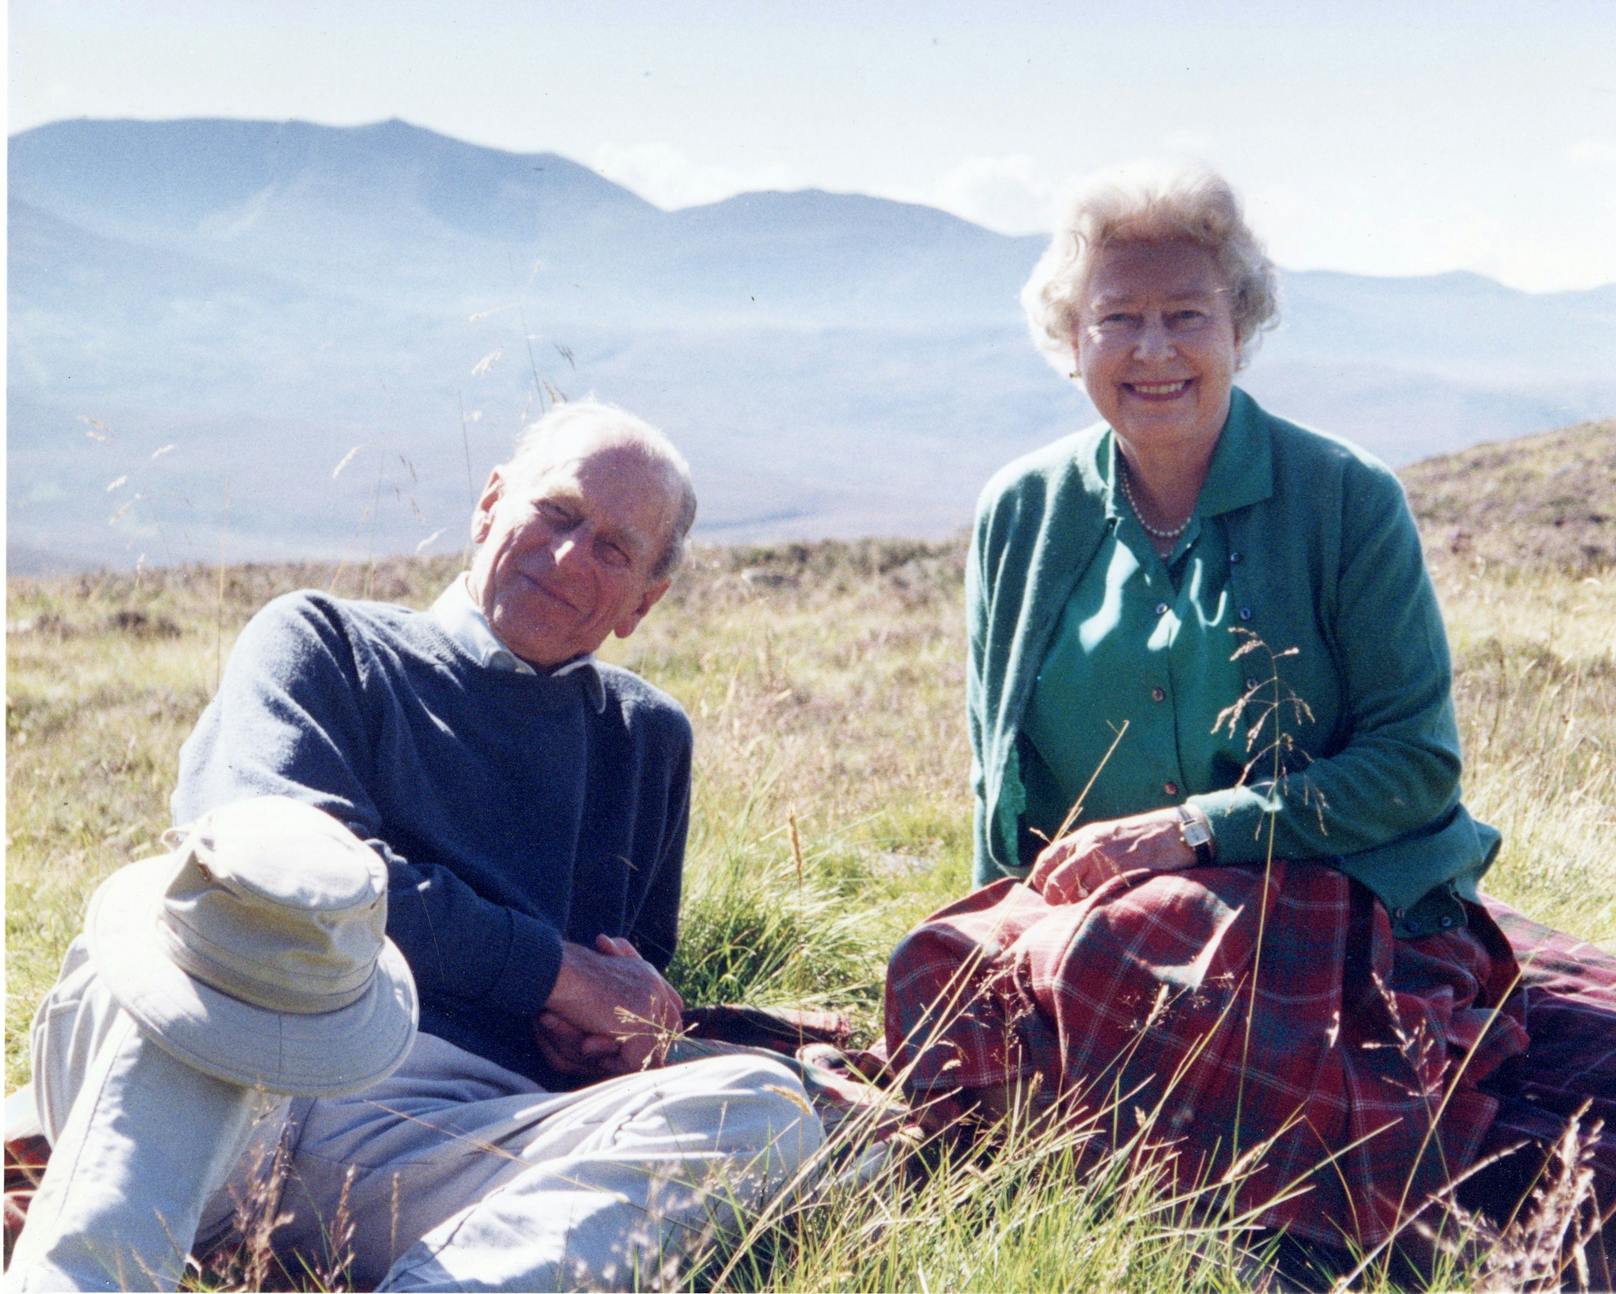 Einen Tag vor der Trauerfeier hat der britische Hof noch einmal ein Bild aus dem privaten Familienalbum veröffentlicht. Es zeigt den Verstorbenen mit Queen Elizabeth im schottischen Hochland – entspannt, lächelnd, auf einer Wiese sitzend. 